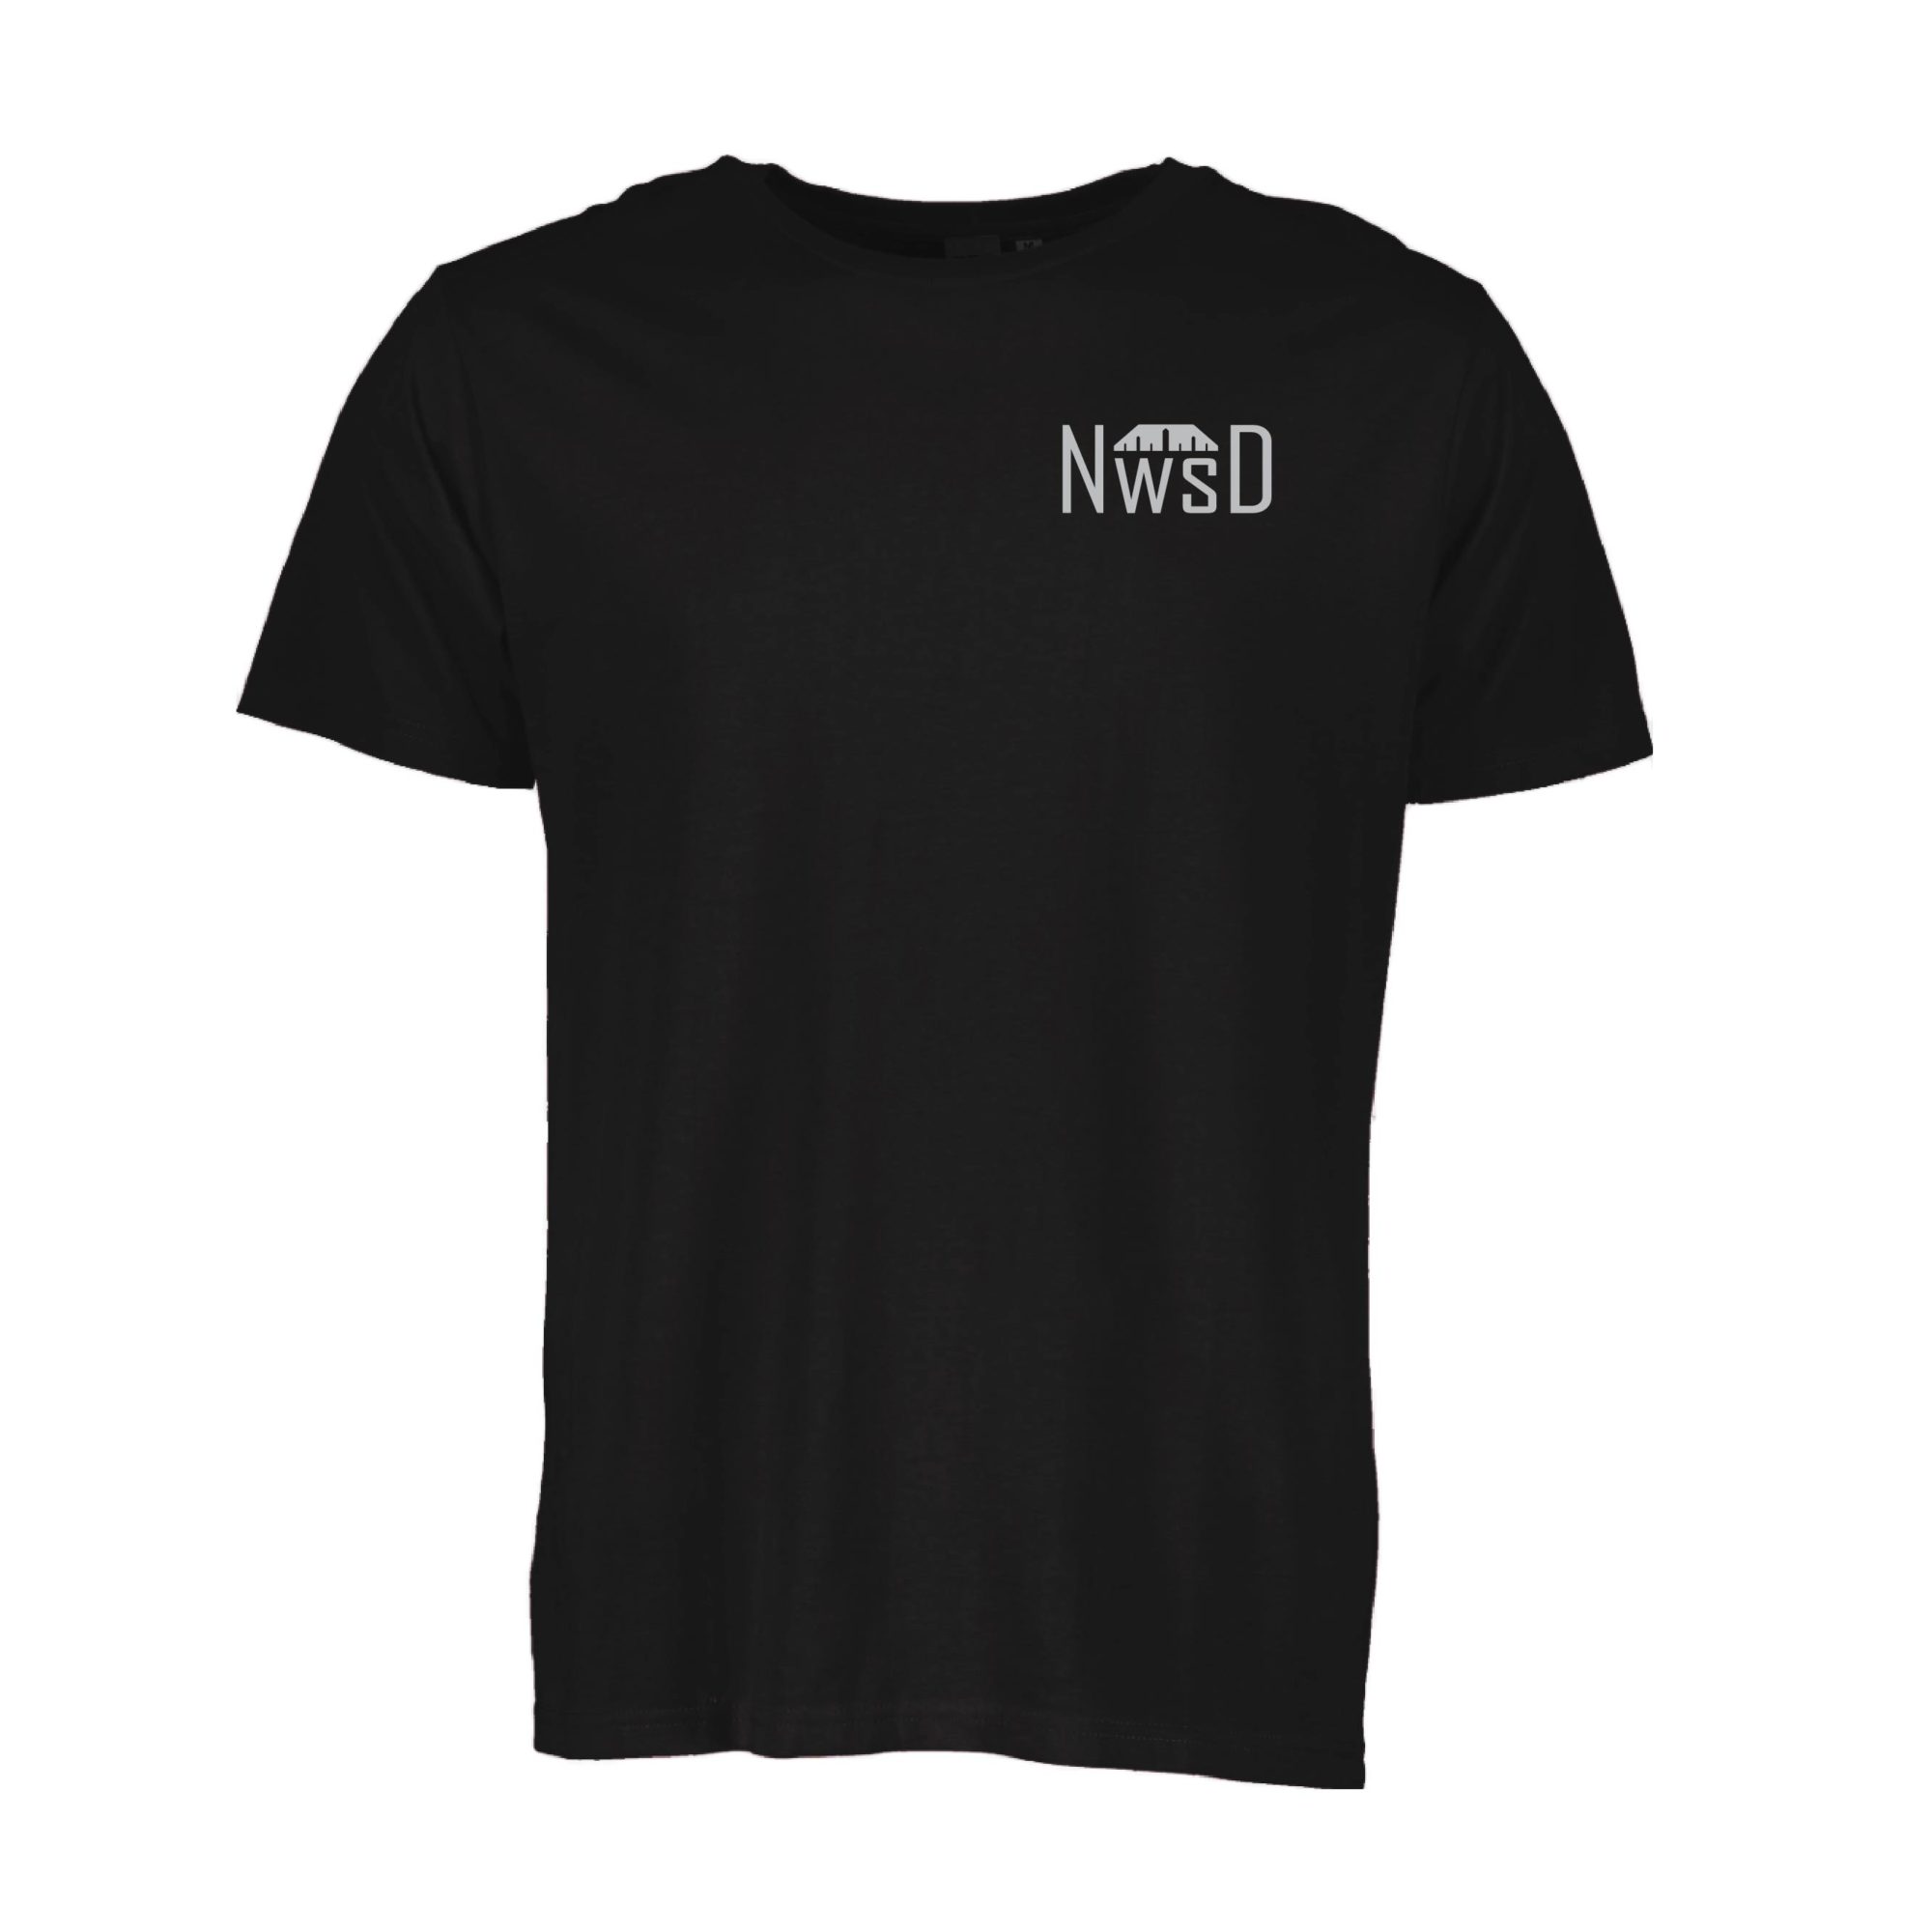 NWSD T-Shirts | Northwest Scaler Designs